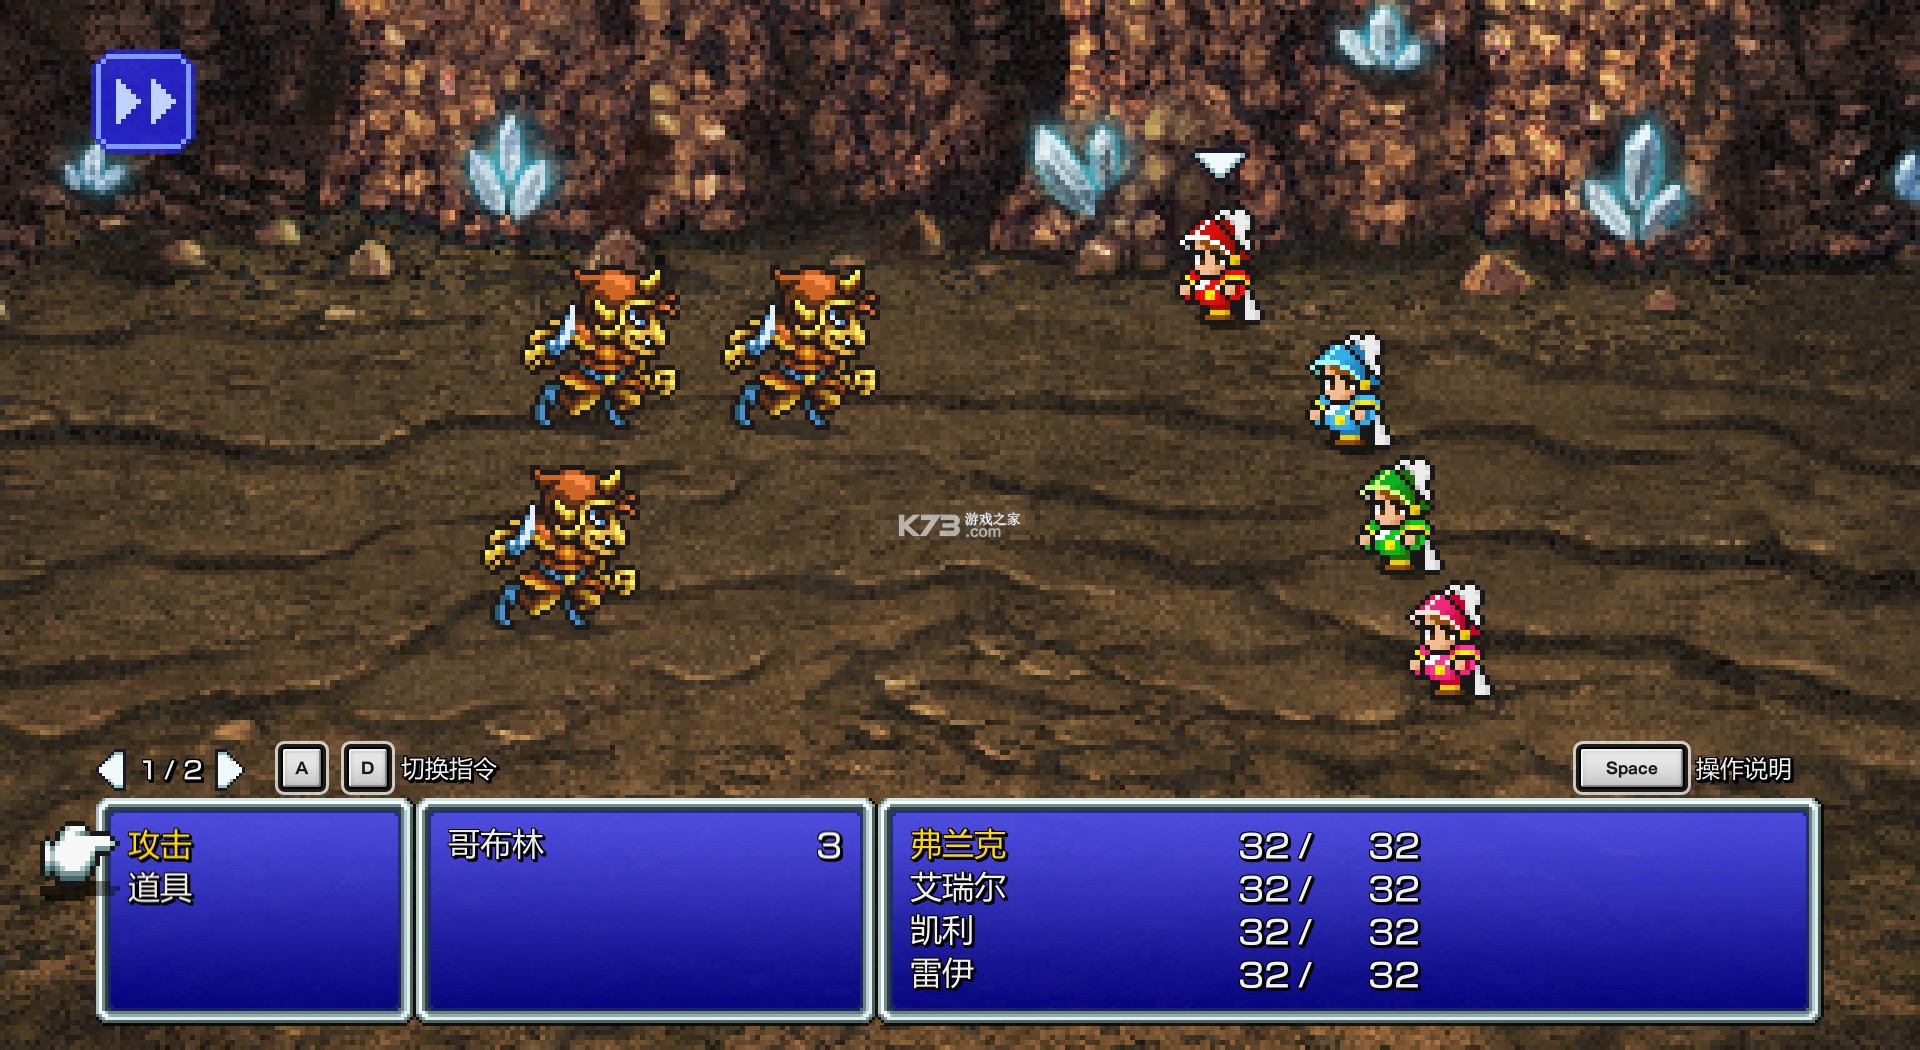  Final Fantasy 3 pixel composite v1.0.1 computer version cracked version screenshot